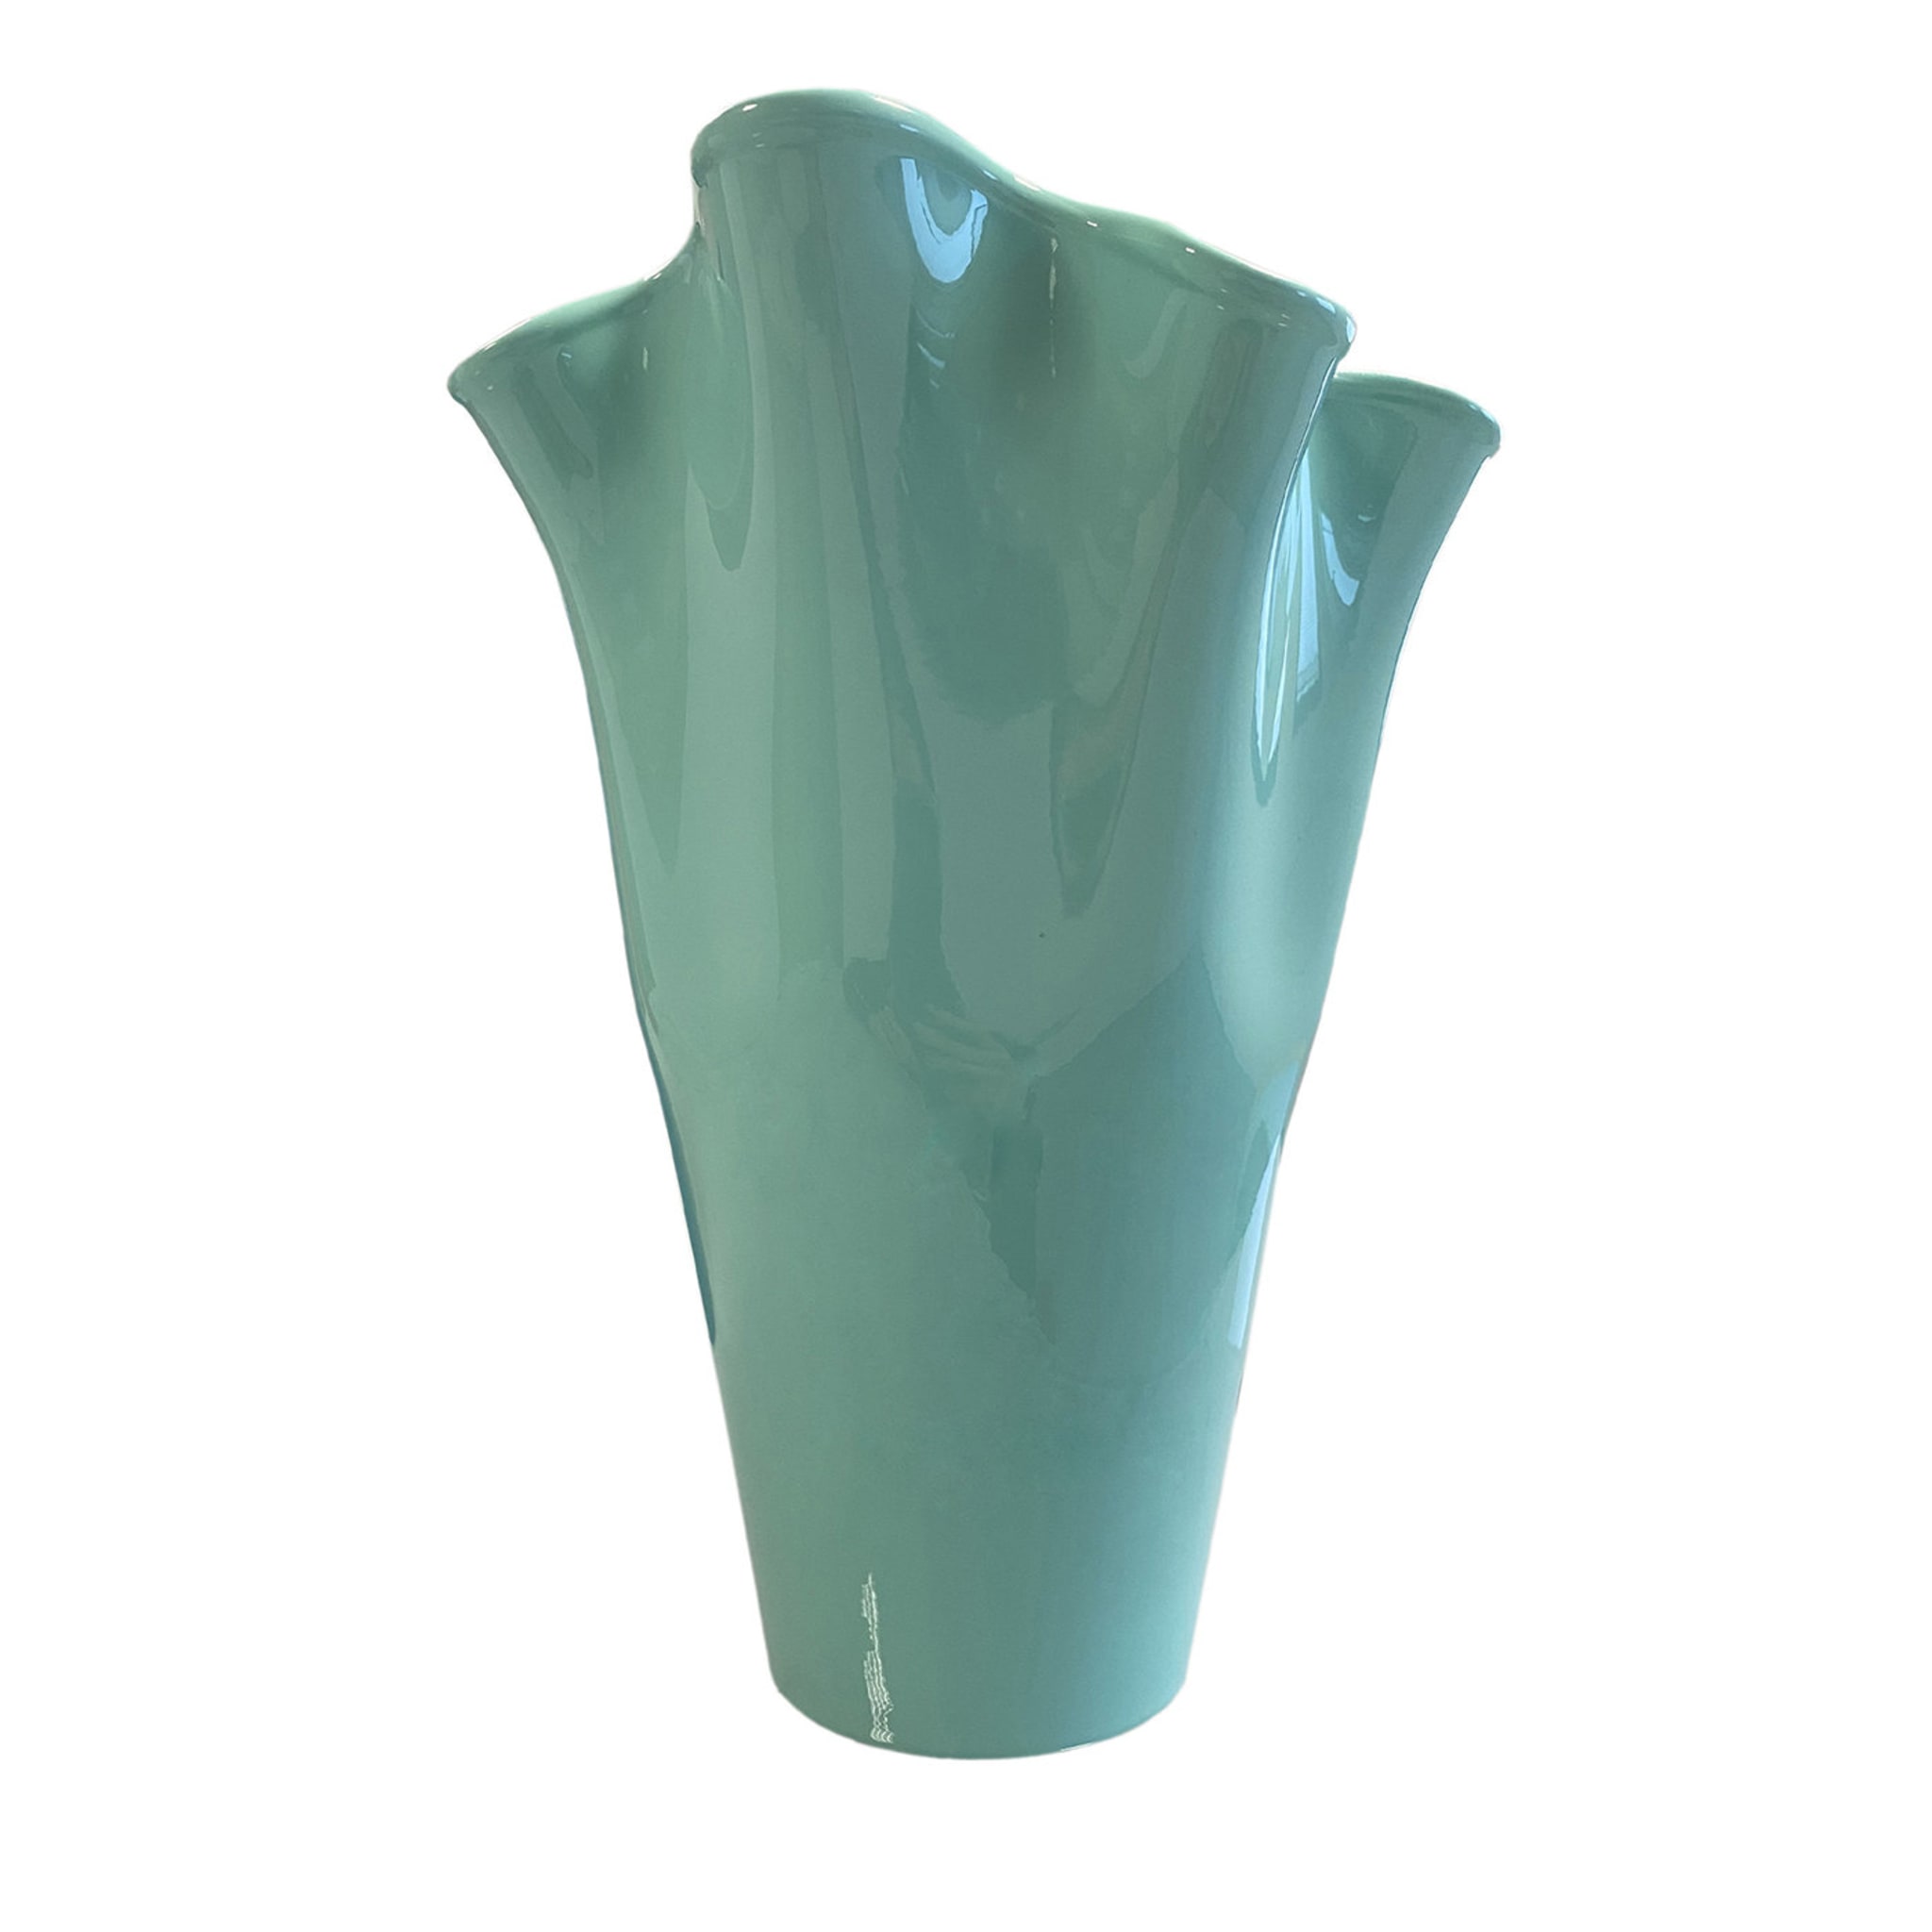 Vase bleu clair Velluto de Fabio Casali - Vue principale